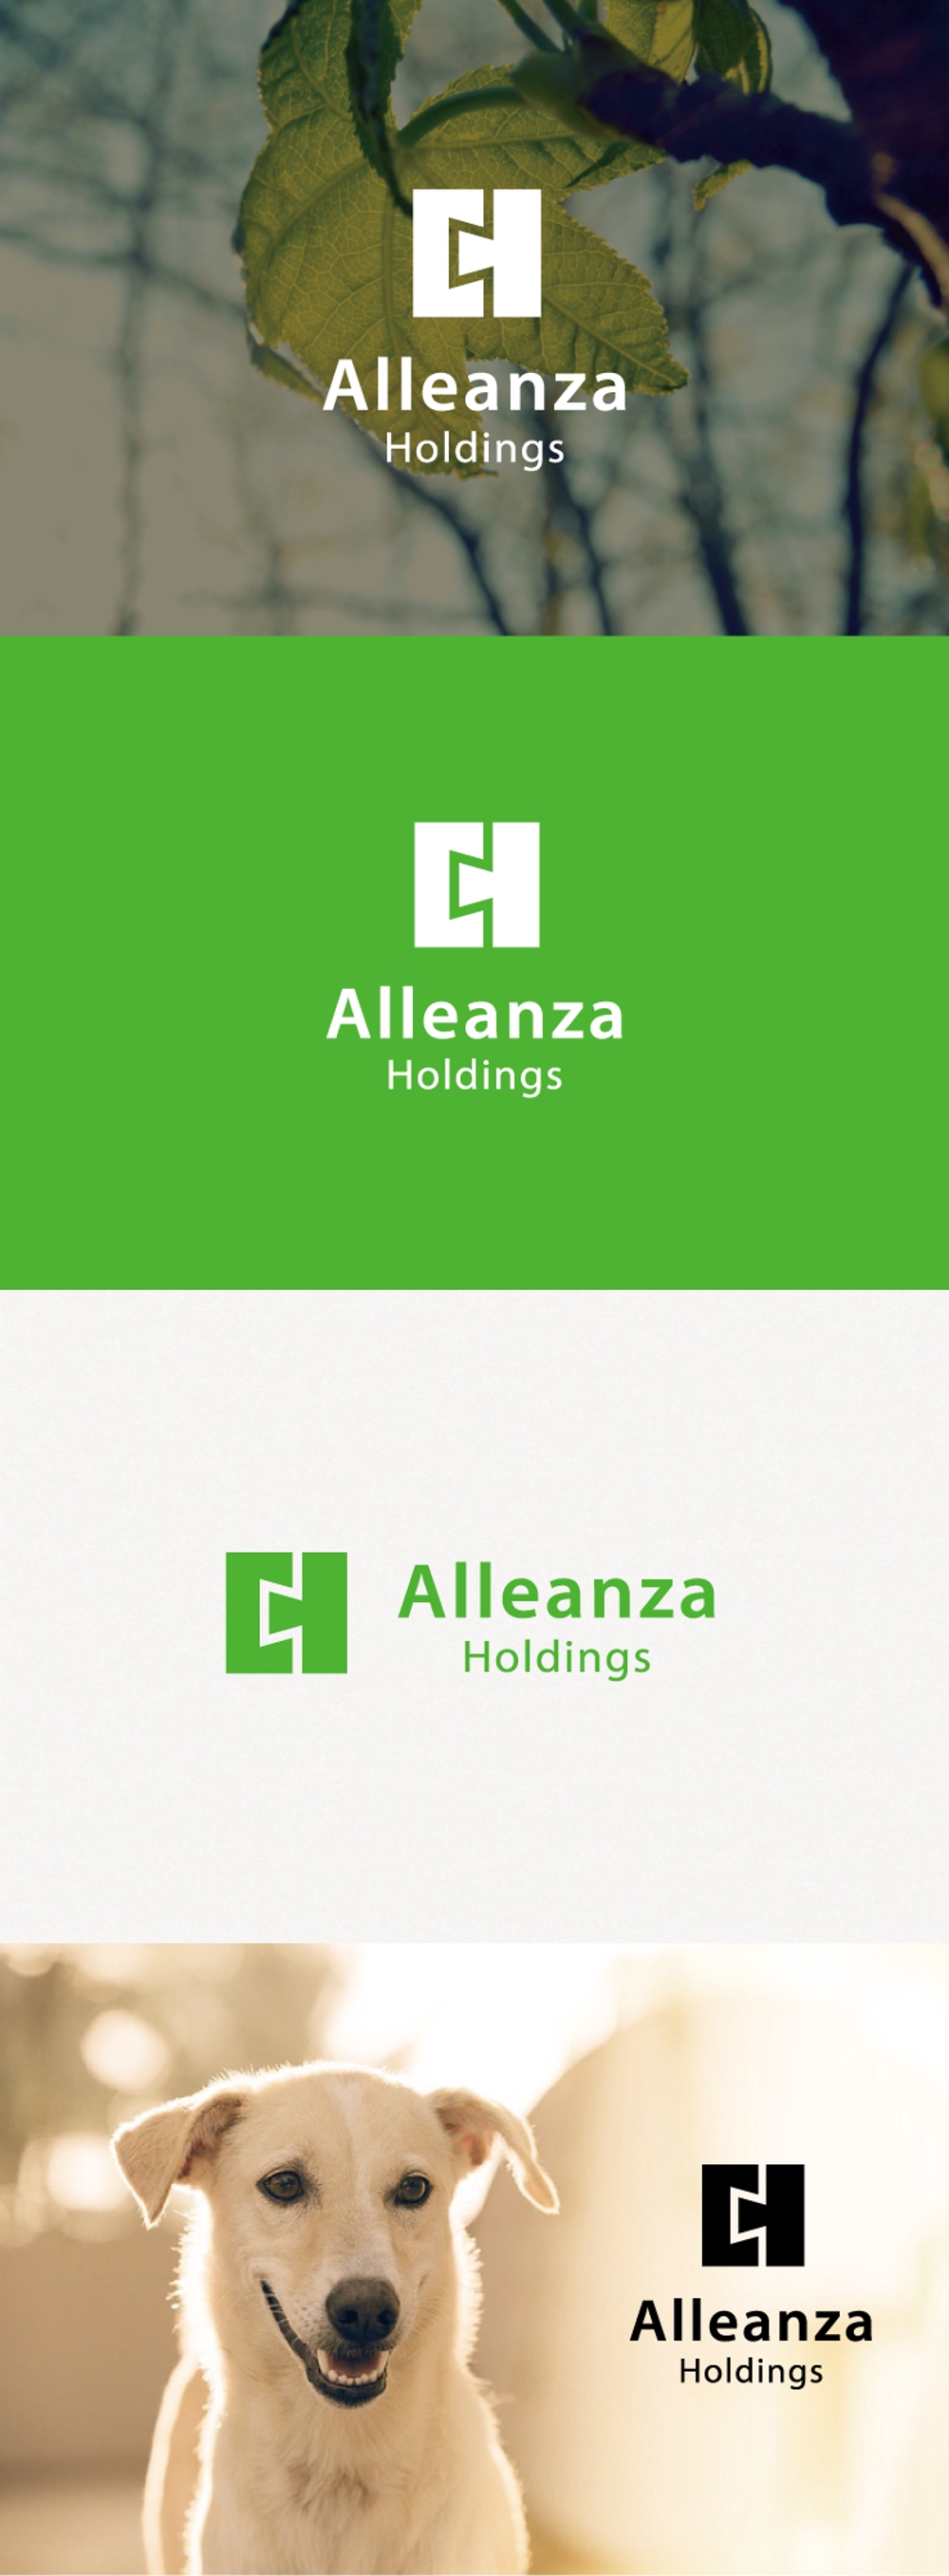 アレンザホールディングス株式会社「Alleanza Holdings」の会社ロゴマーク